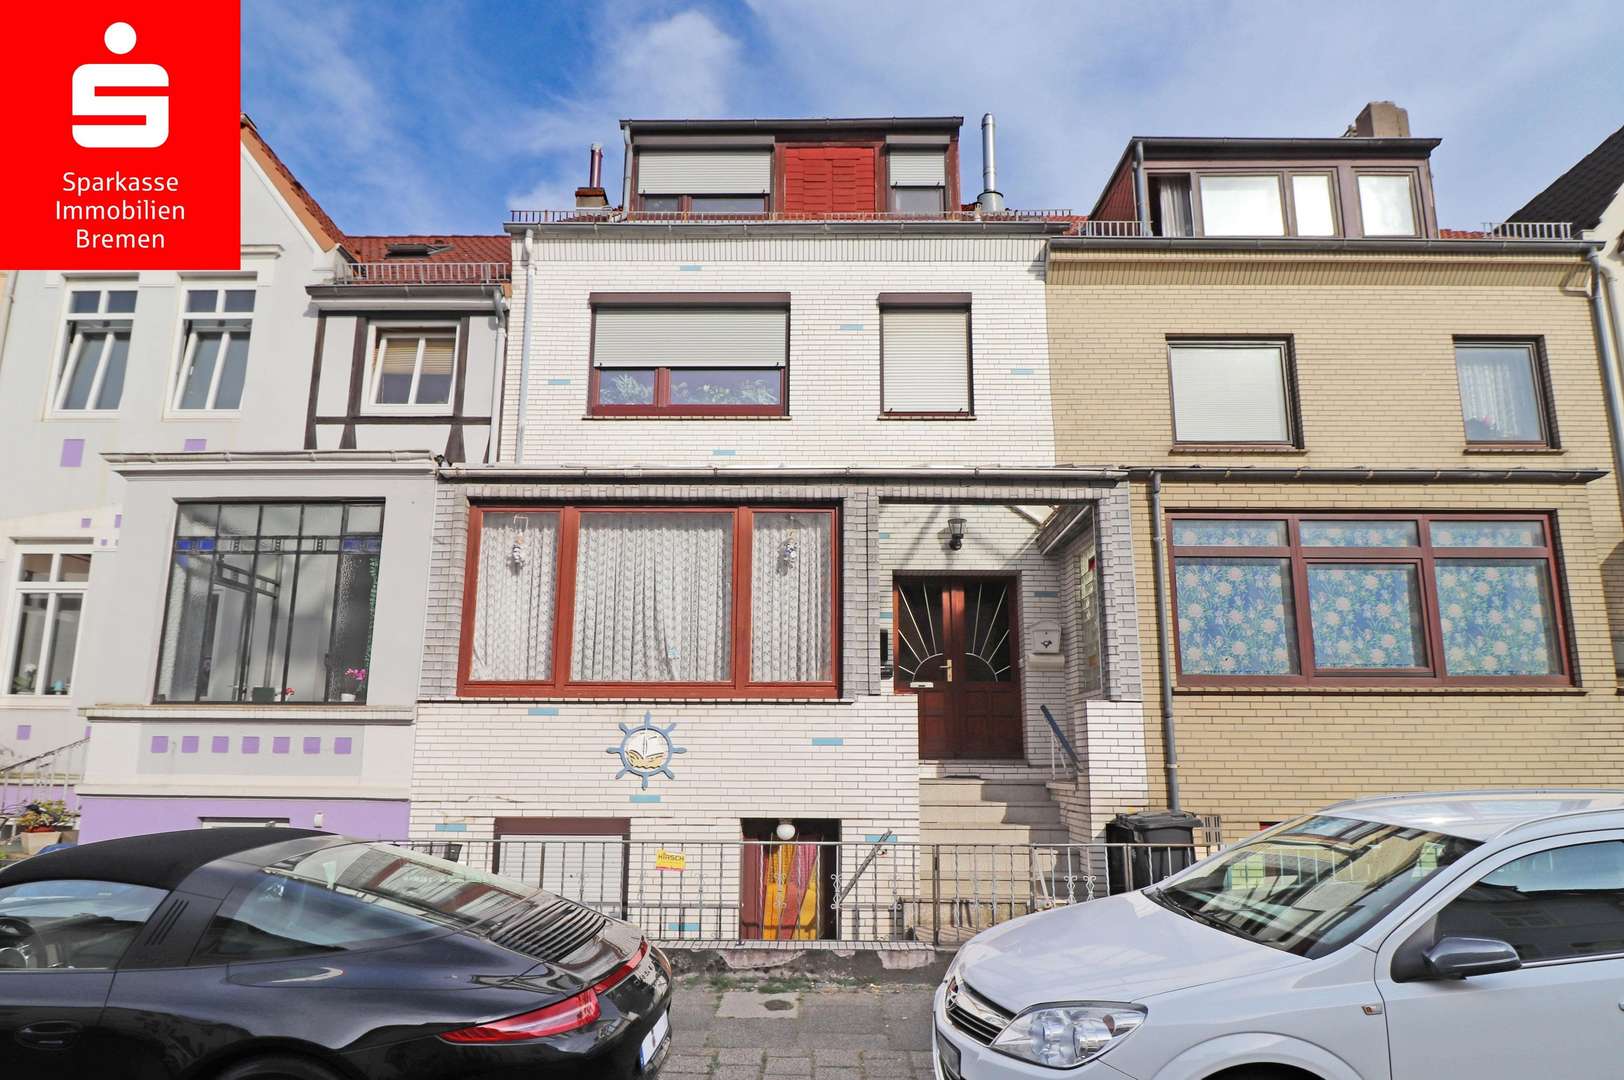 Frontansicht - Maisonette-Wohnung in 28197 Bremen mit 86m² günstig kaufen